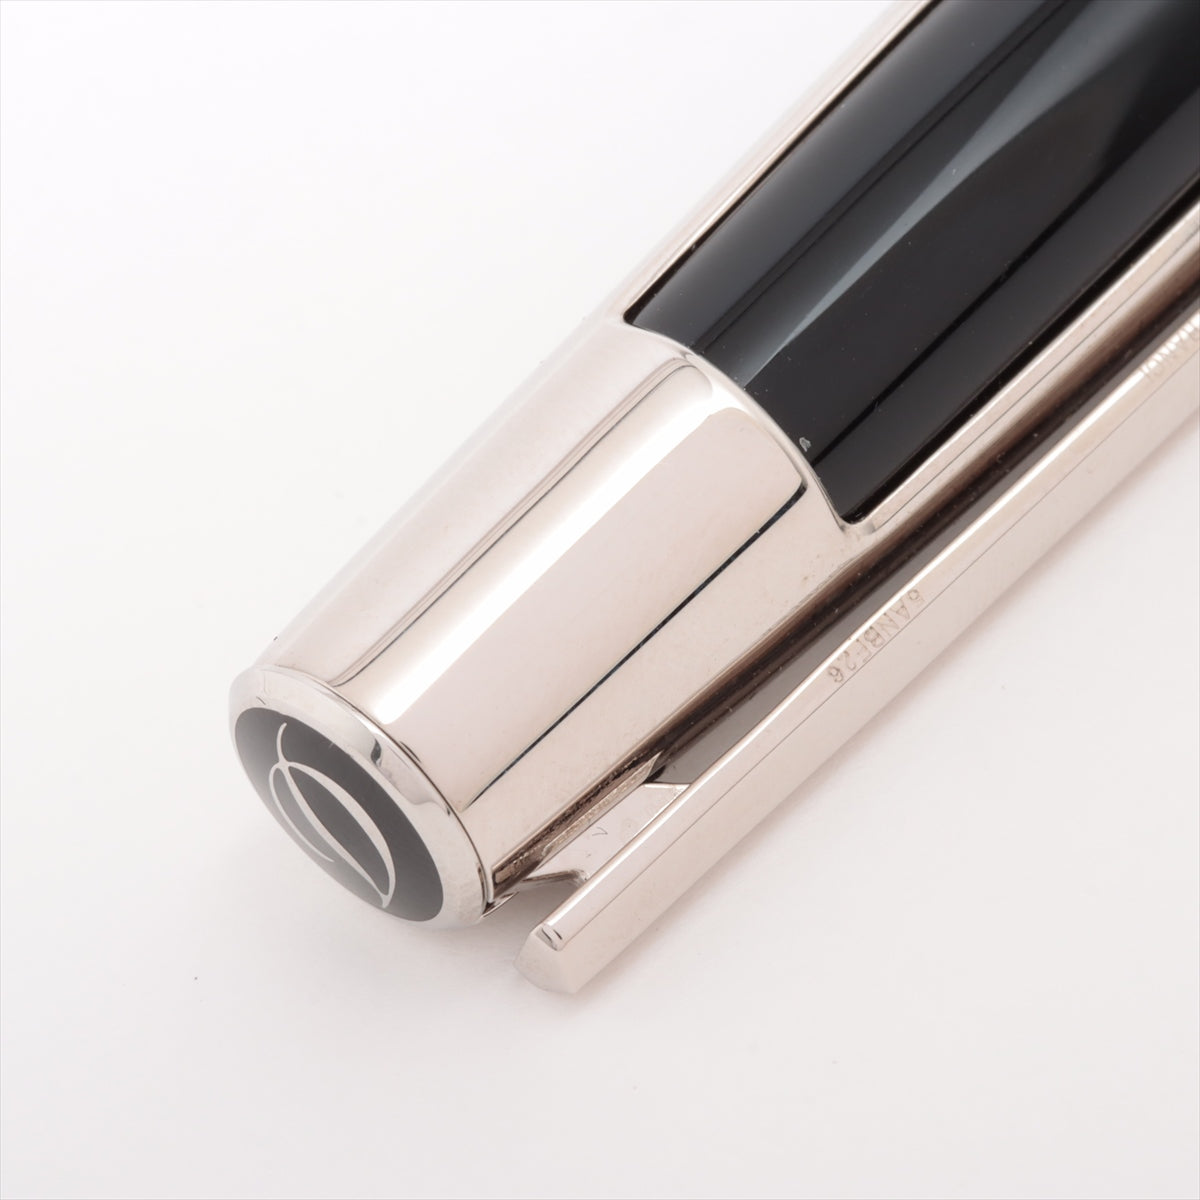 デュポン ボールペン メタル×レジン ブラック×シルバー シャープペンのみ筆記可能 5ANBF26 デフィ マルチファンクションペン シャープペン リフィル付き